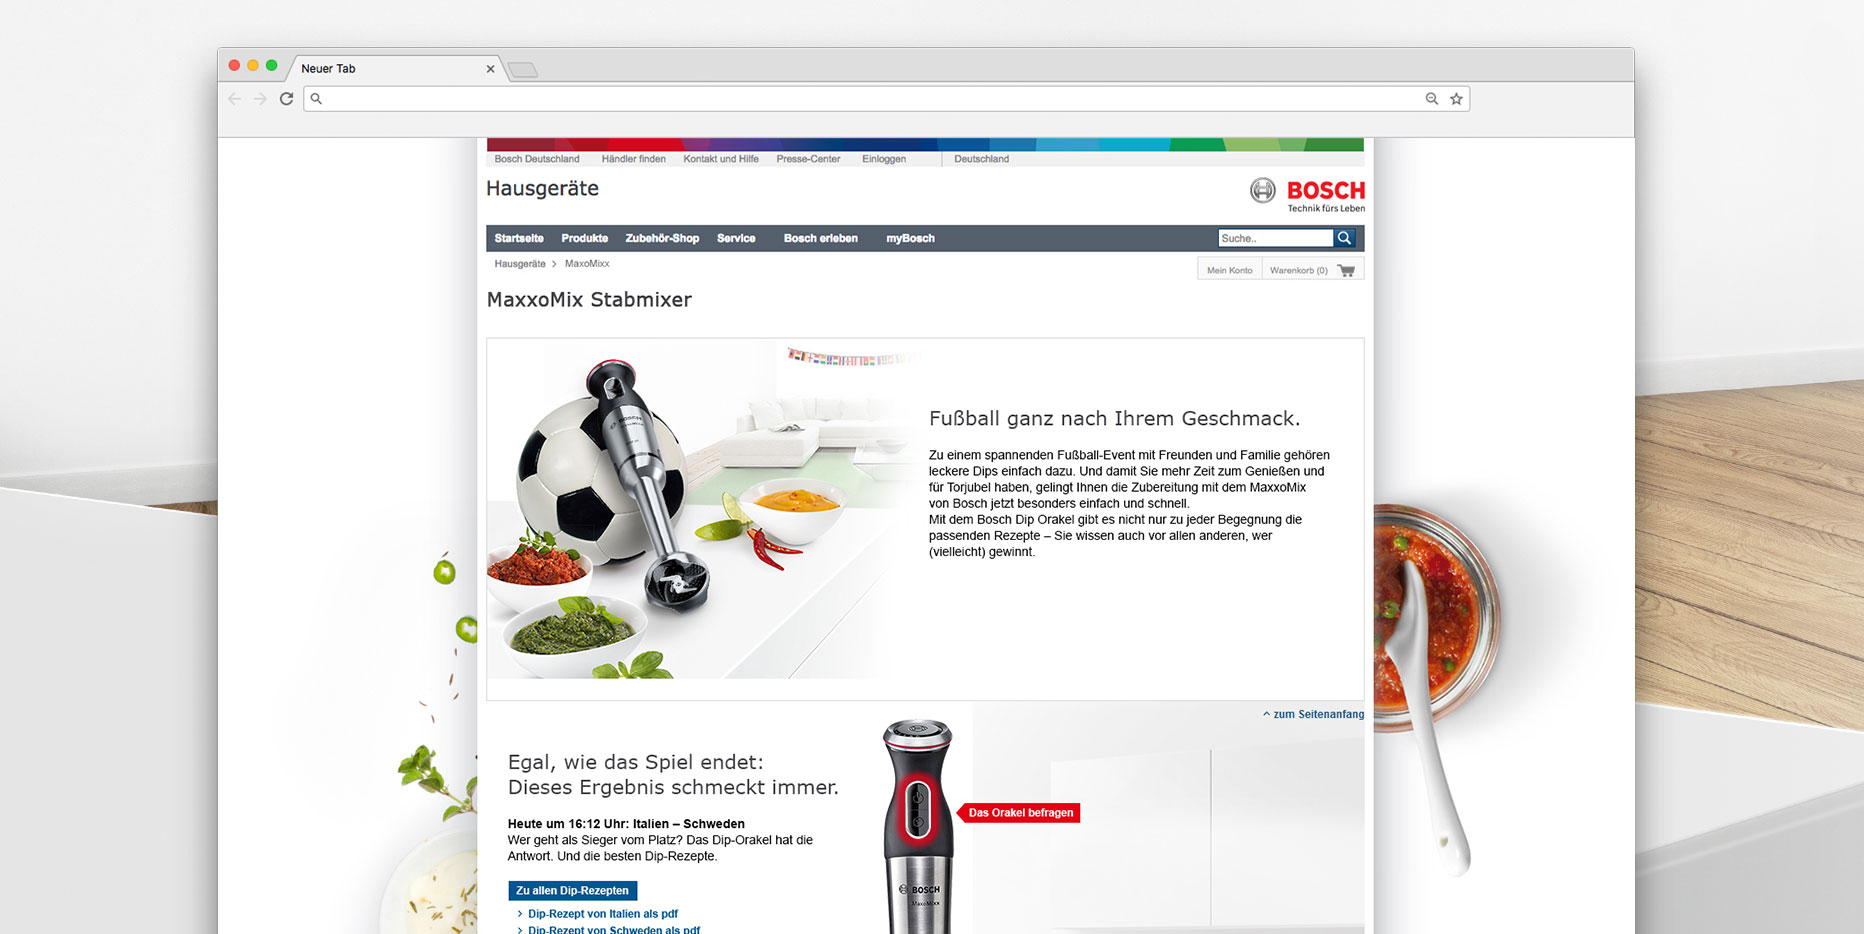 Bosch Webspecials: das Dip-Orakel zur EM